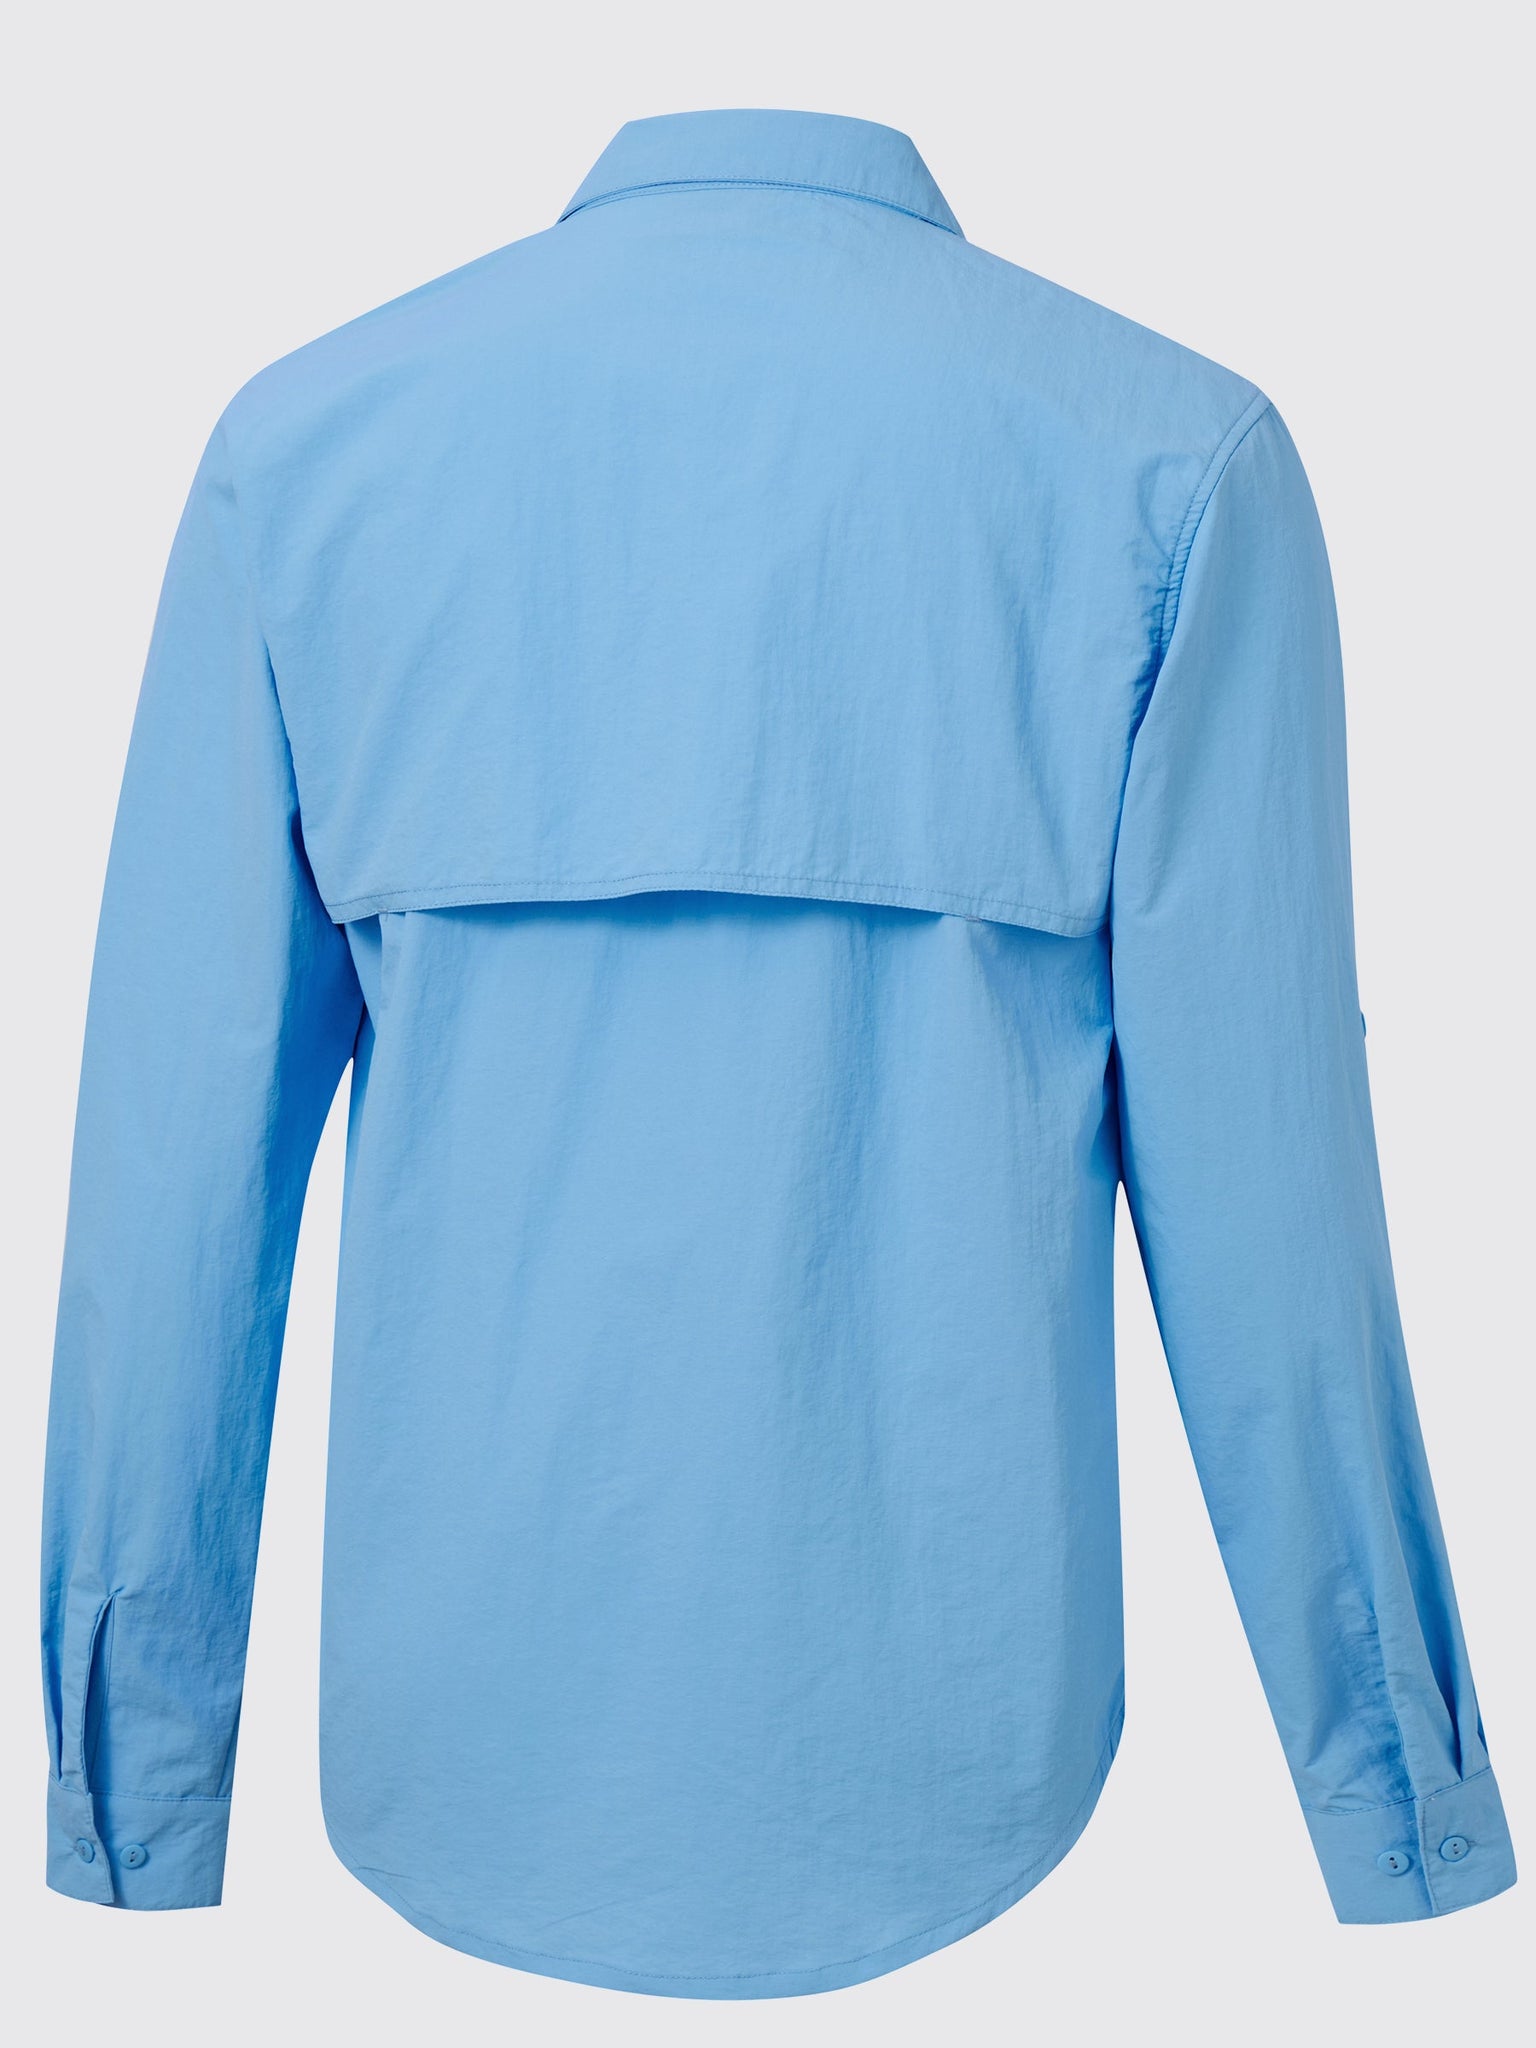 Men's Fishing Shirt Long Sleeve Hiking Shirts_Blue2